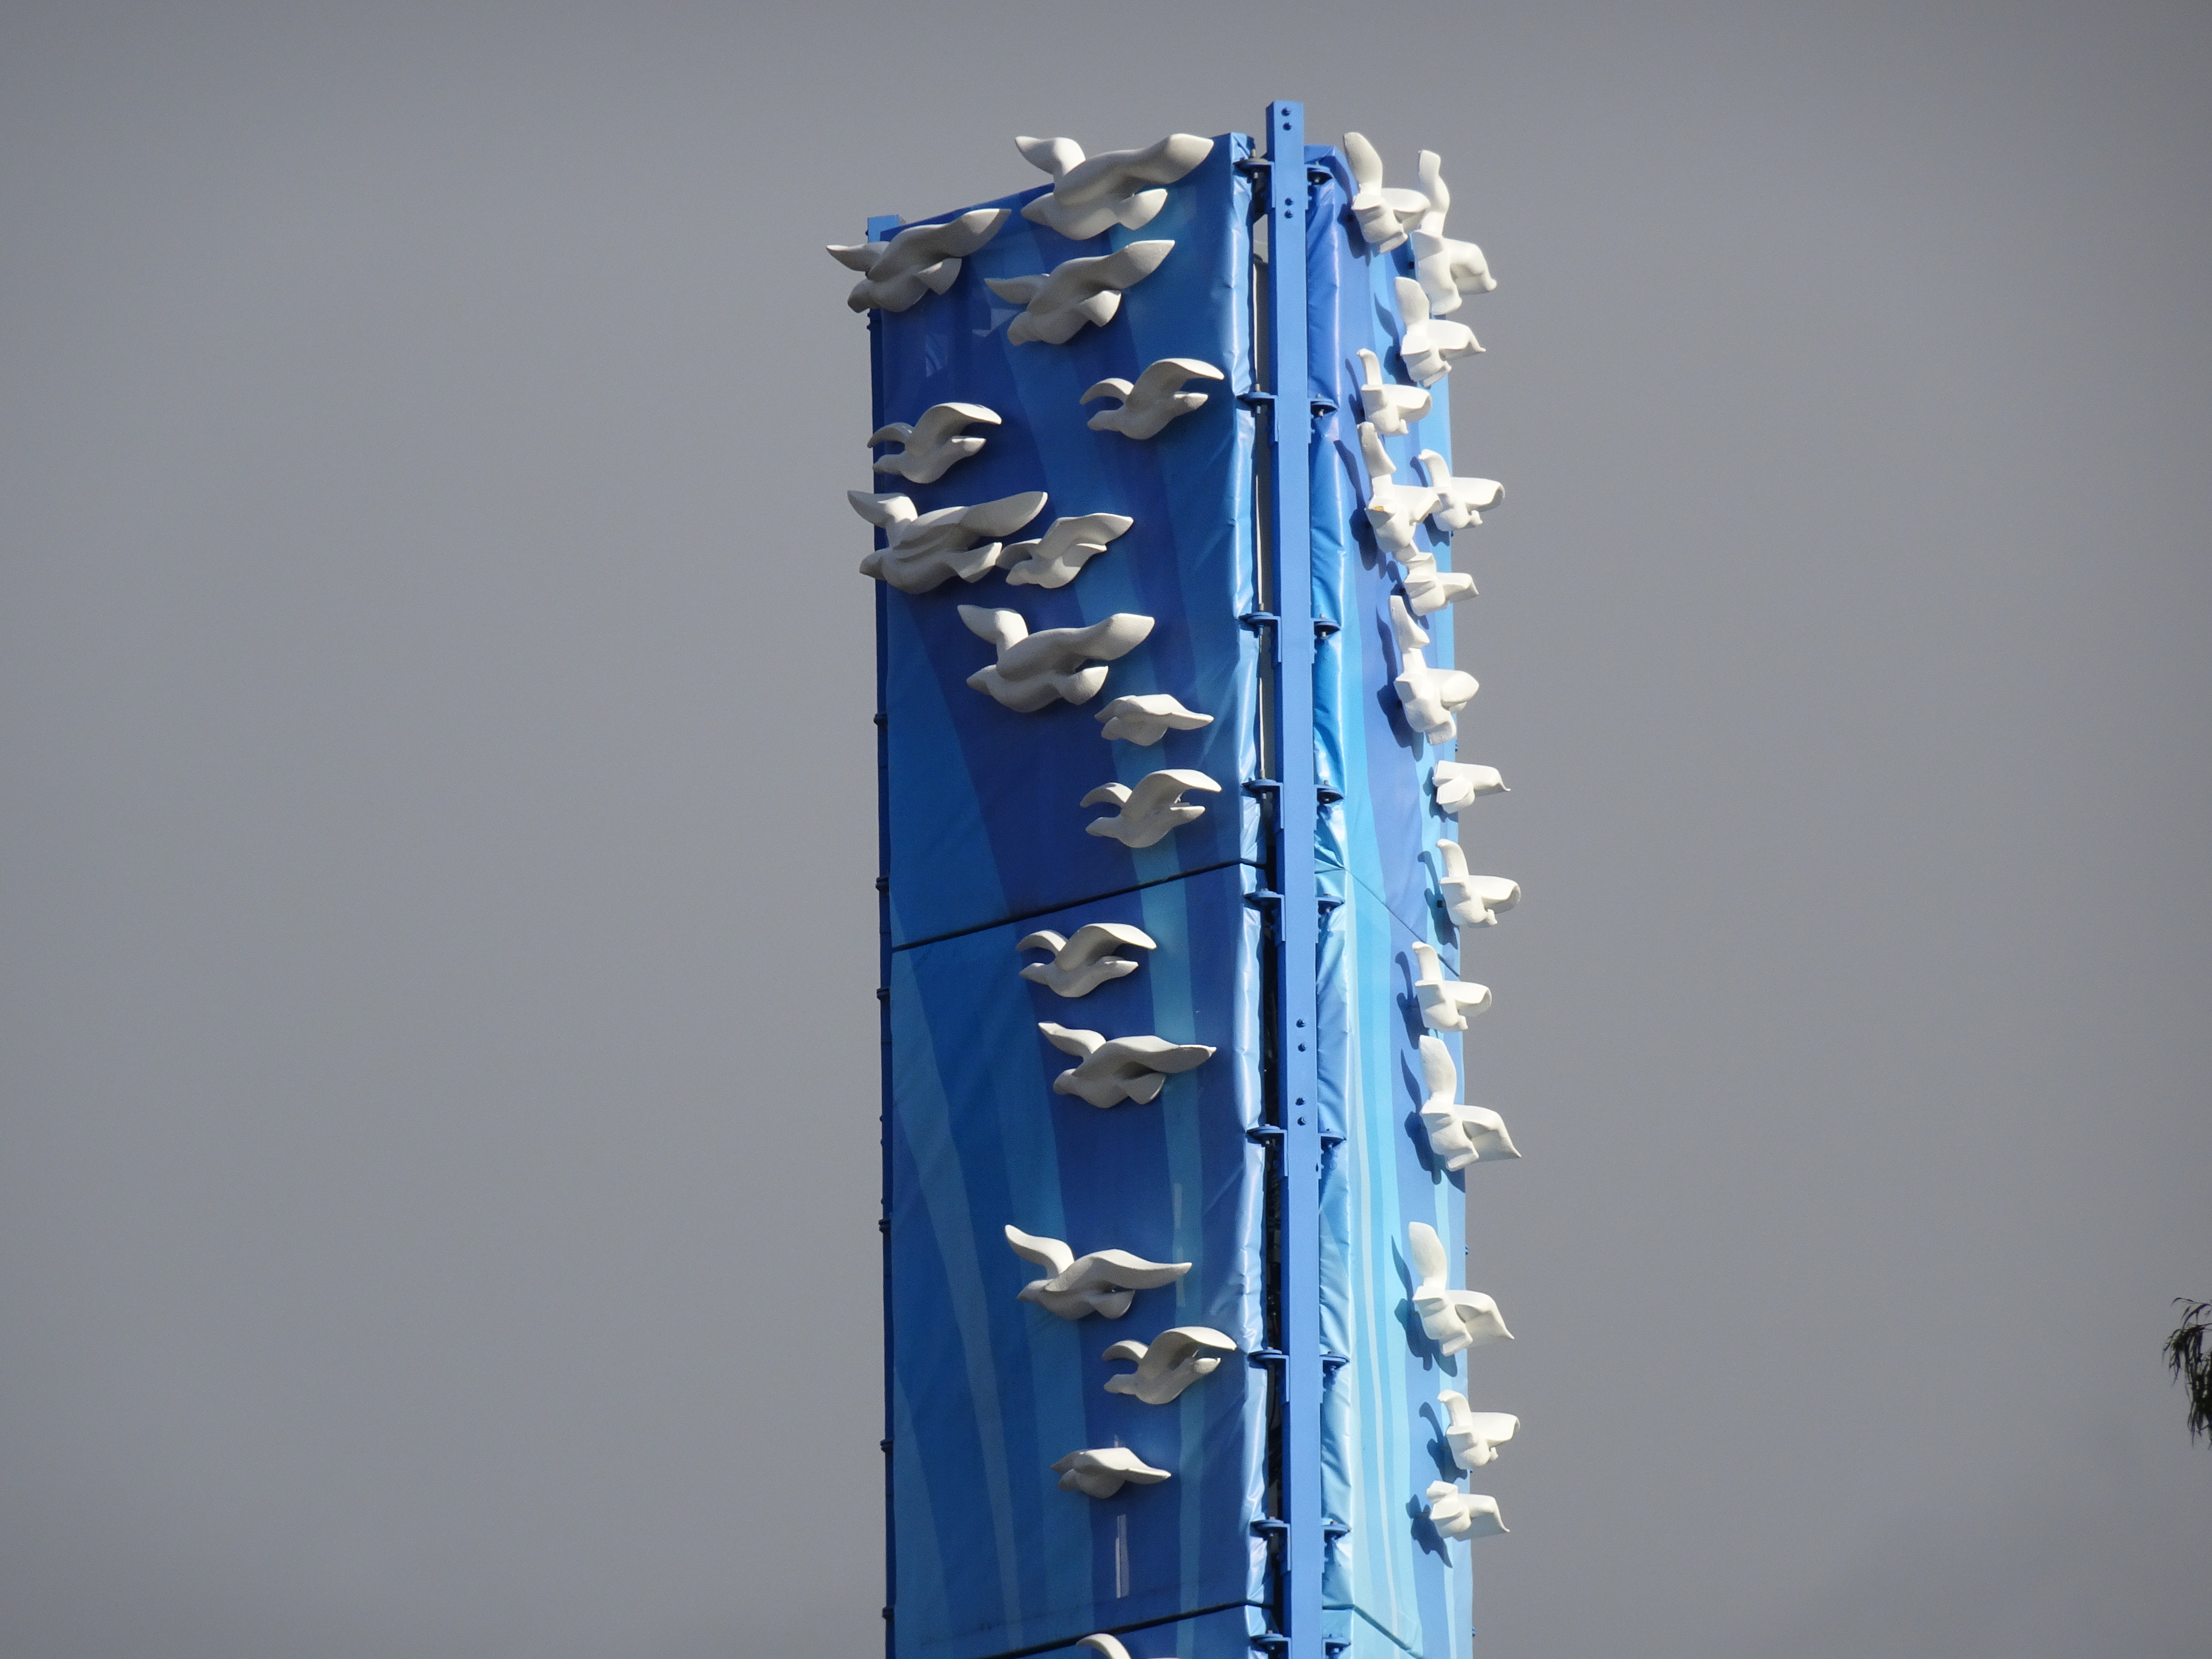 3D birds soar in Birds on Blue